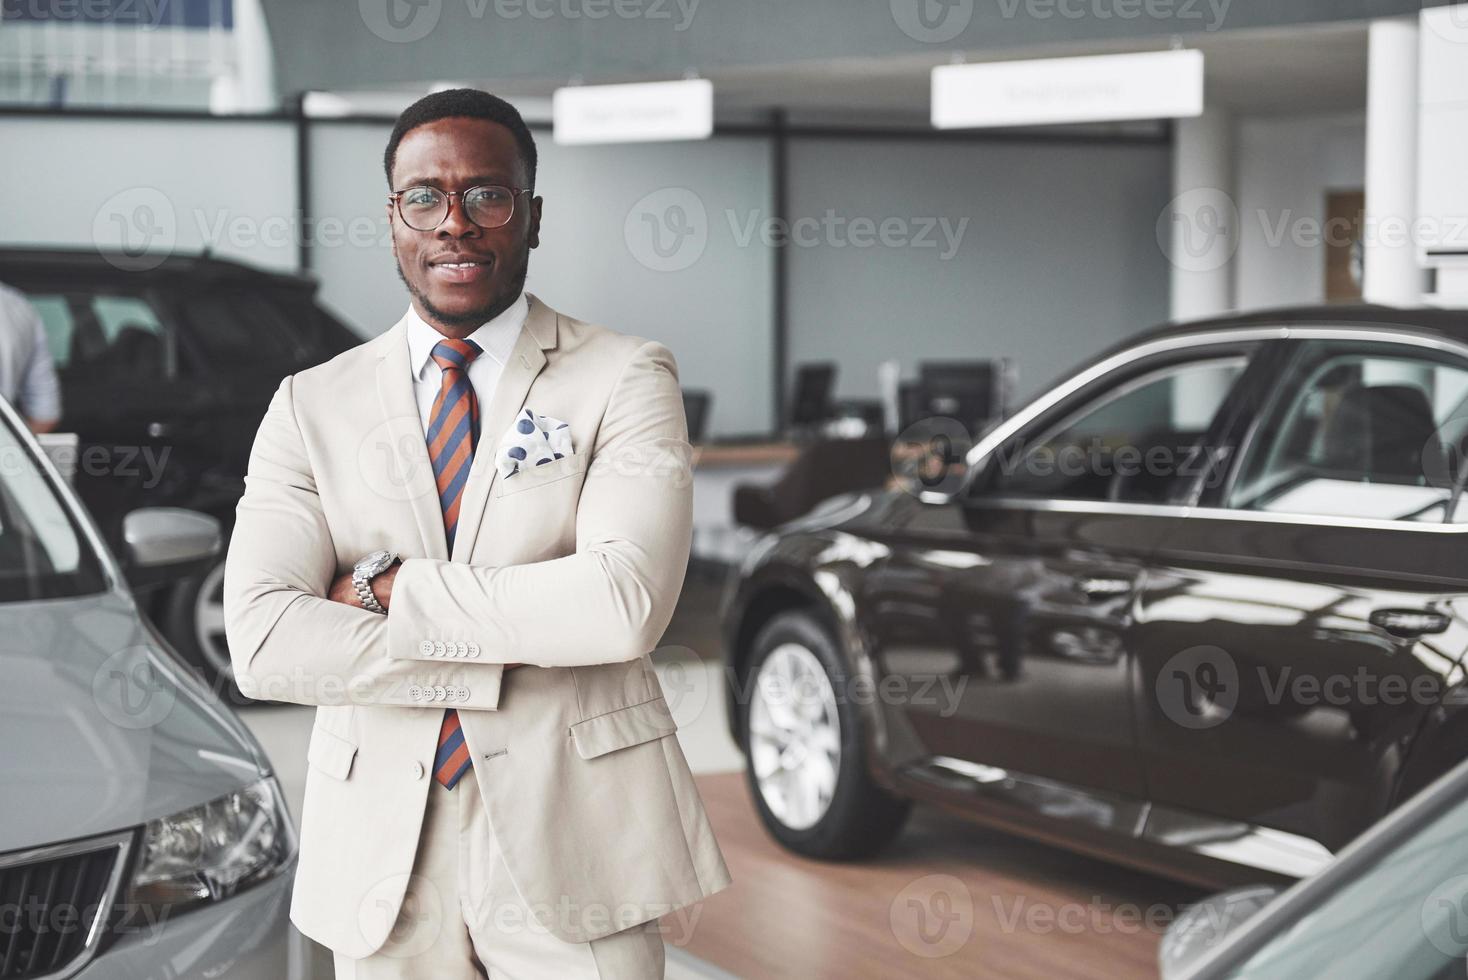 jeune homme d'affaires noir sur fond de salon automobile. concept de vente et de location de voiture photo